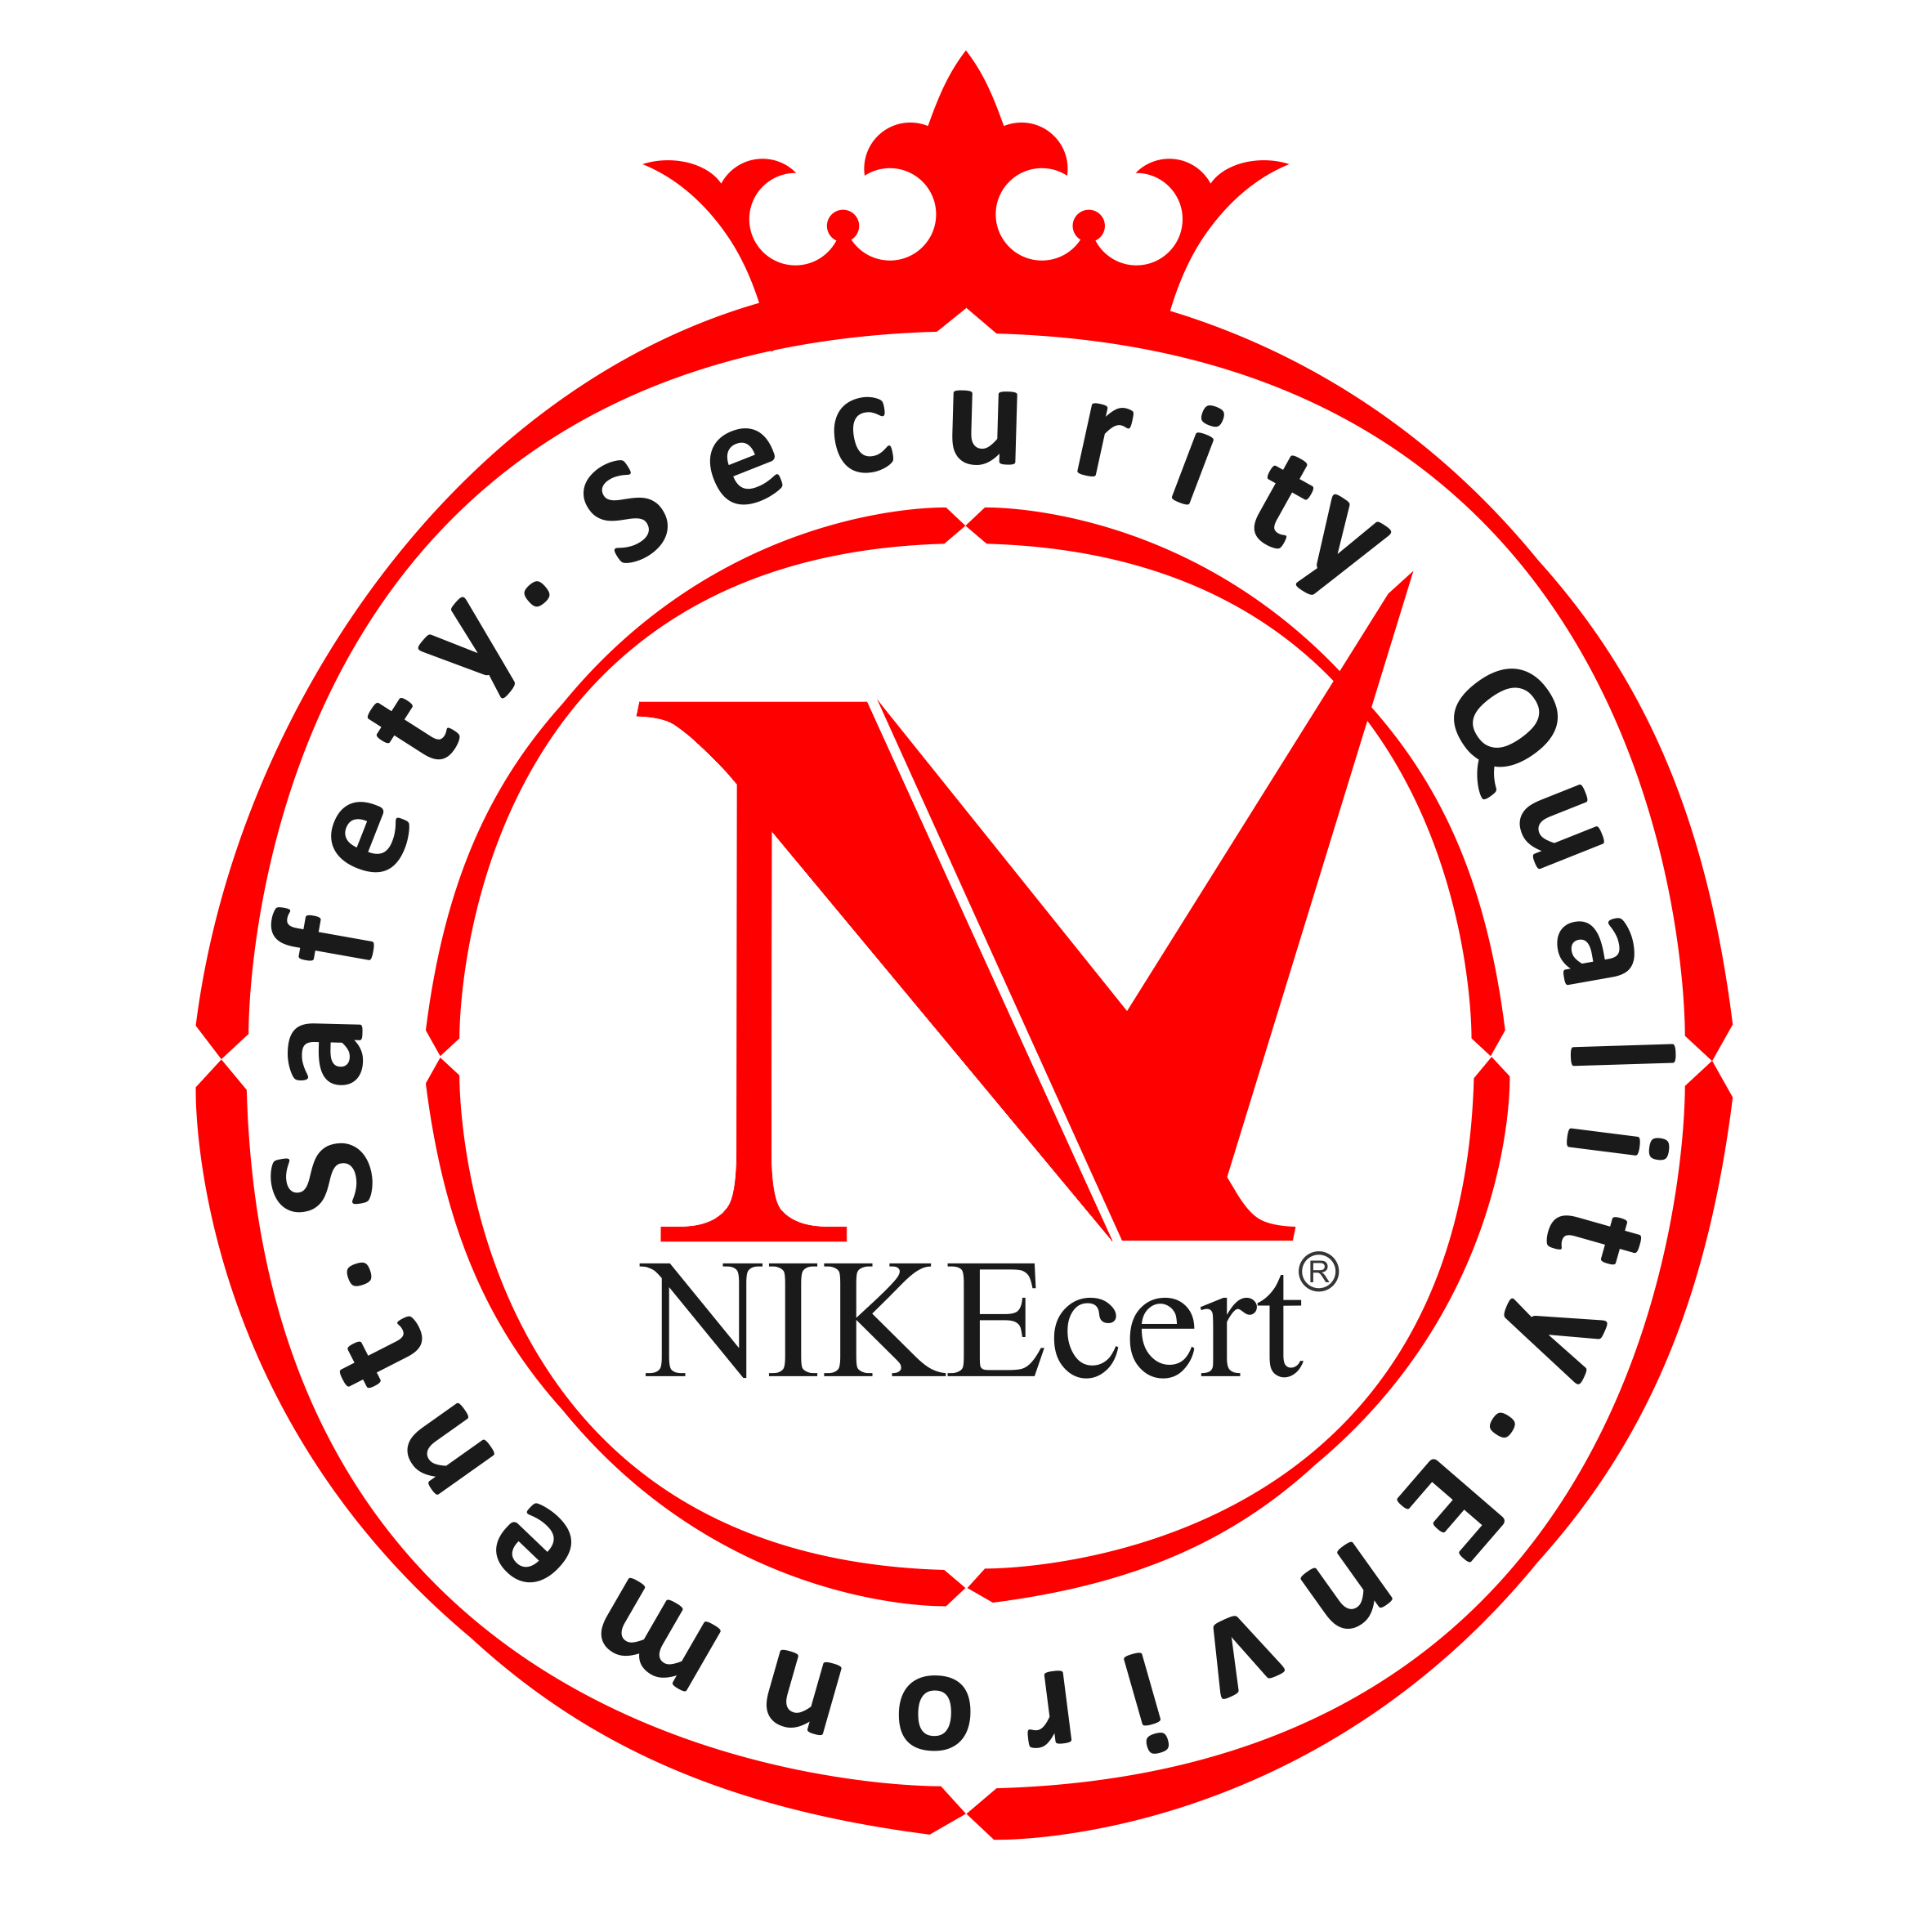 NIKECERT-logo-(2)-99-10-16.final_.png 